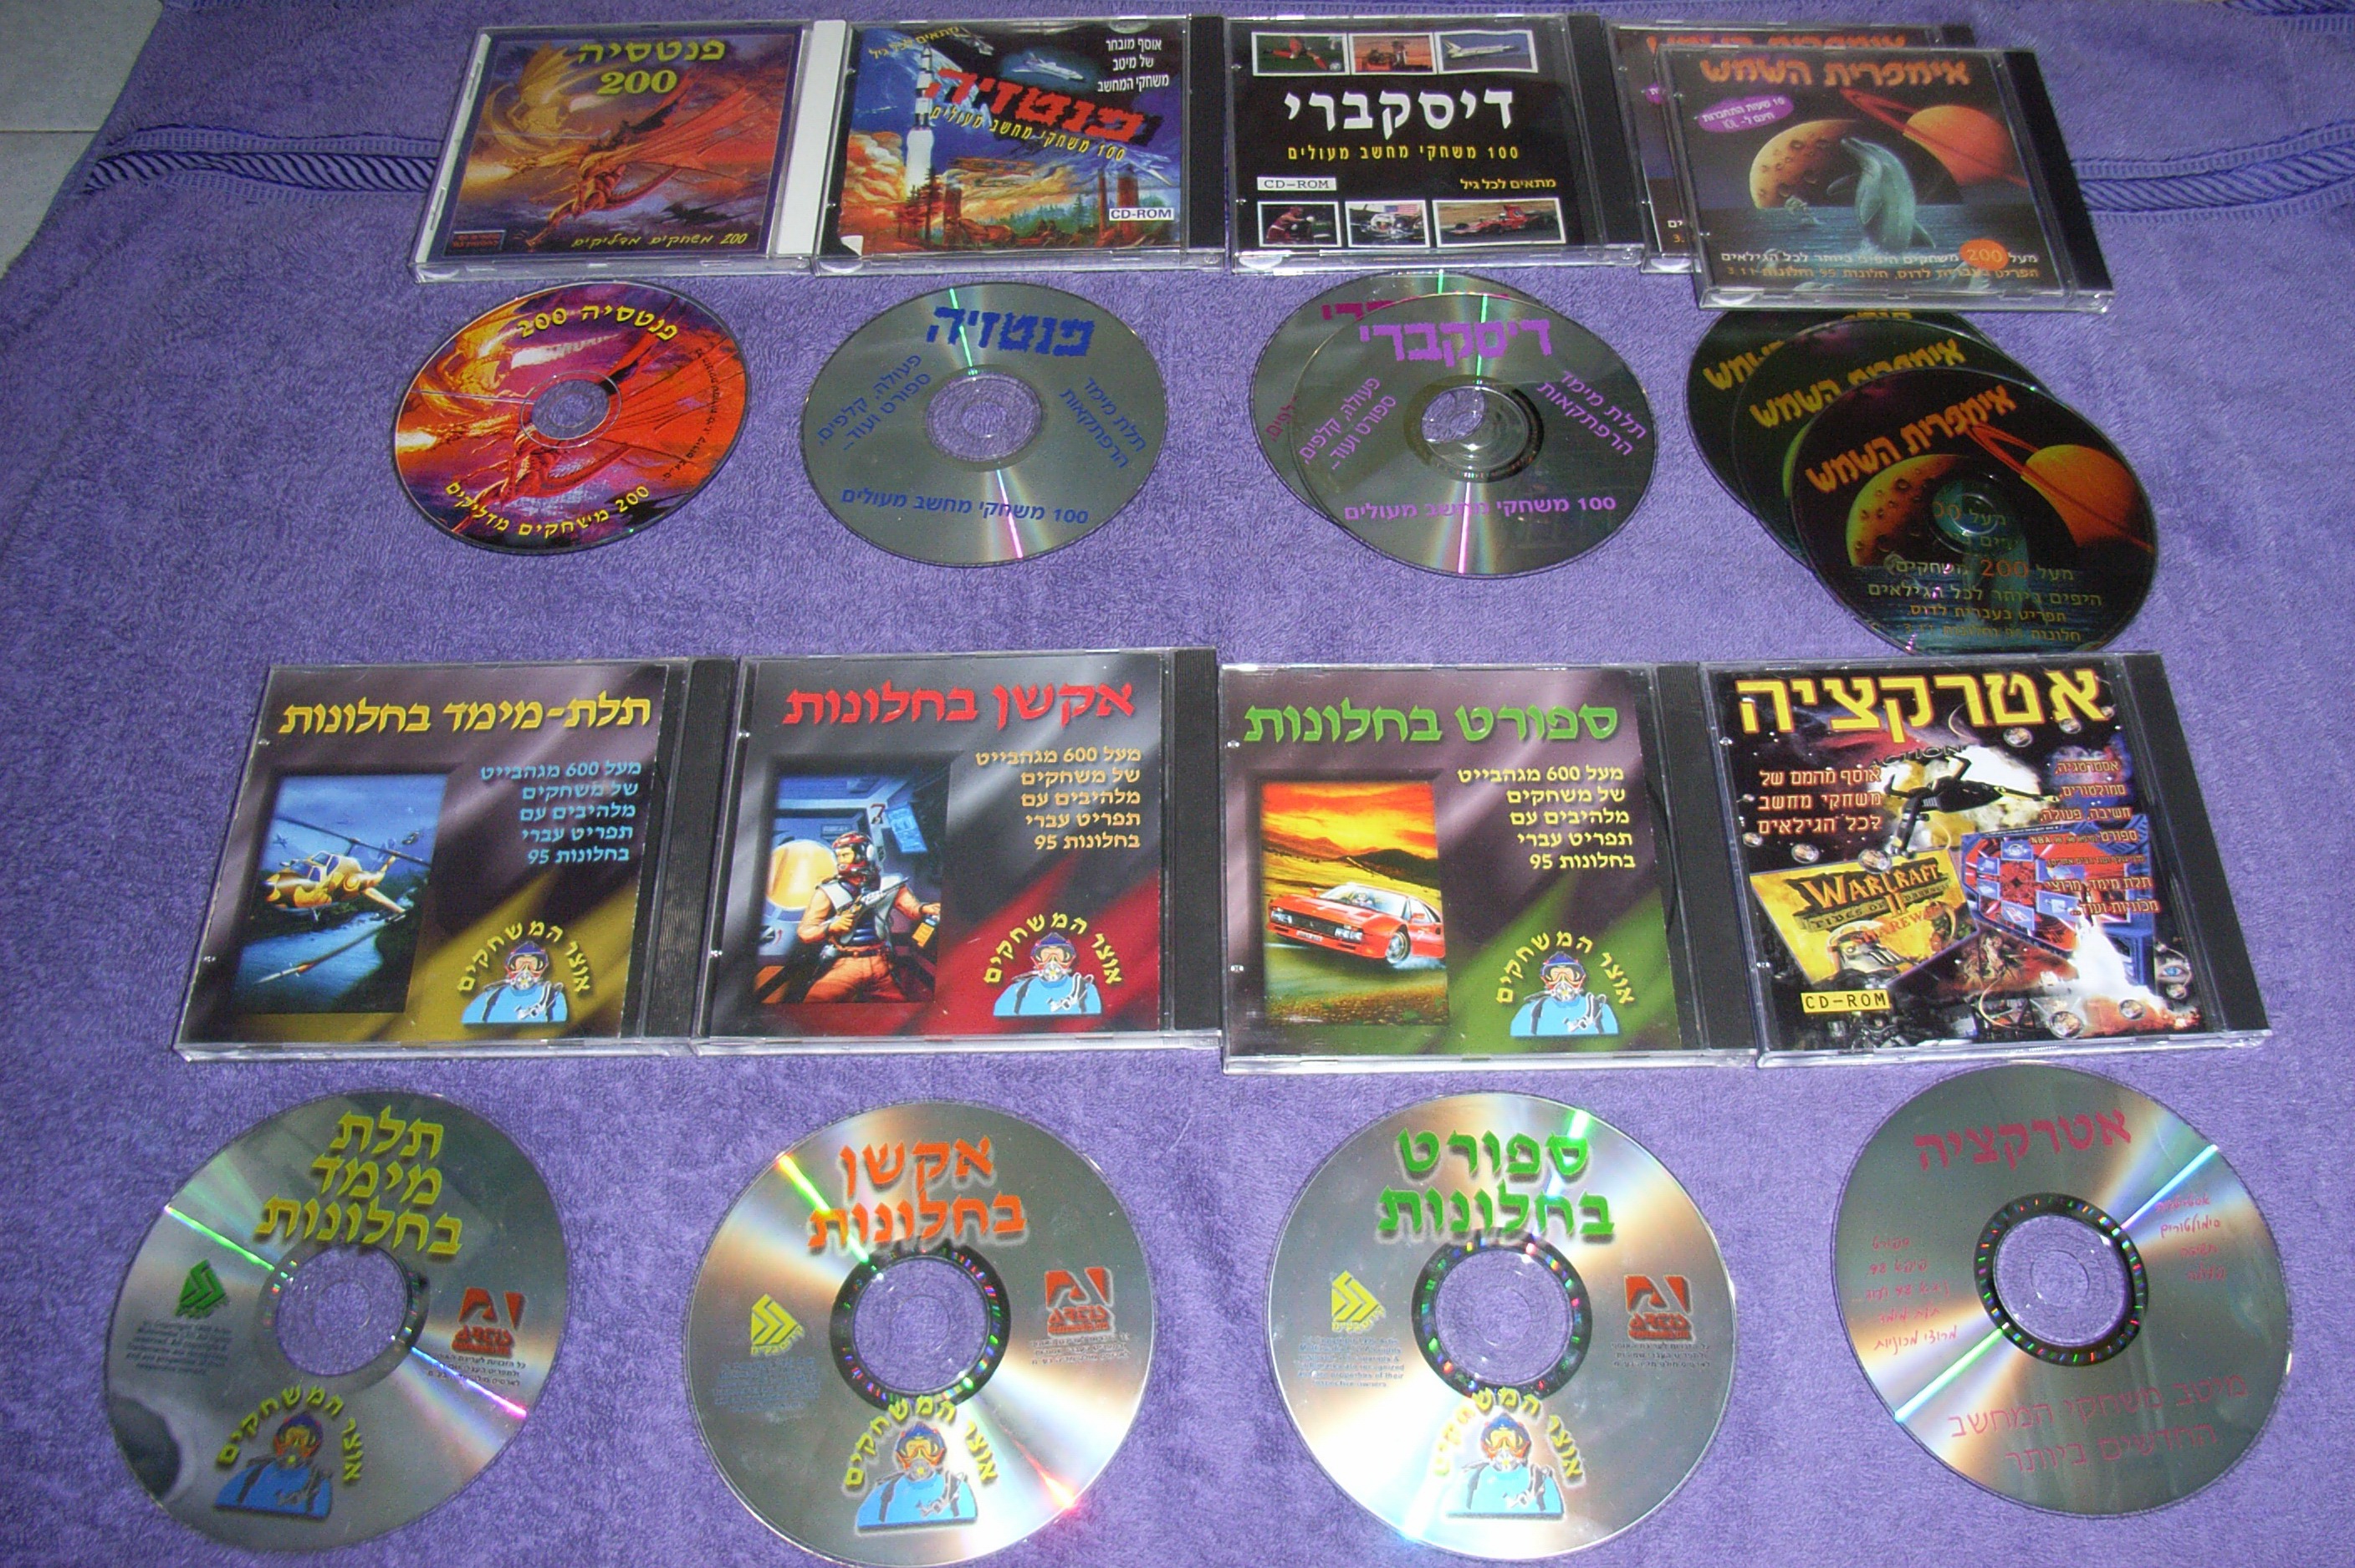 Сборник игр 2. Компакт диск для игр. Сборник игр CD collection. Русские игры на CD дисках. Тортуга 2 компакт диск игры.